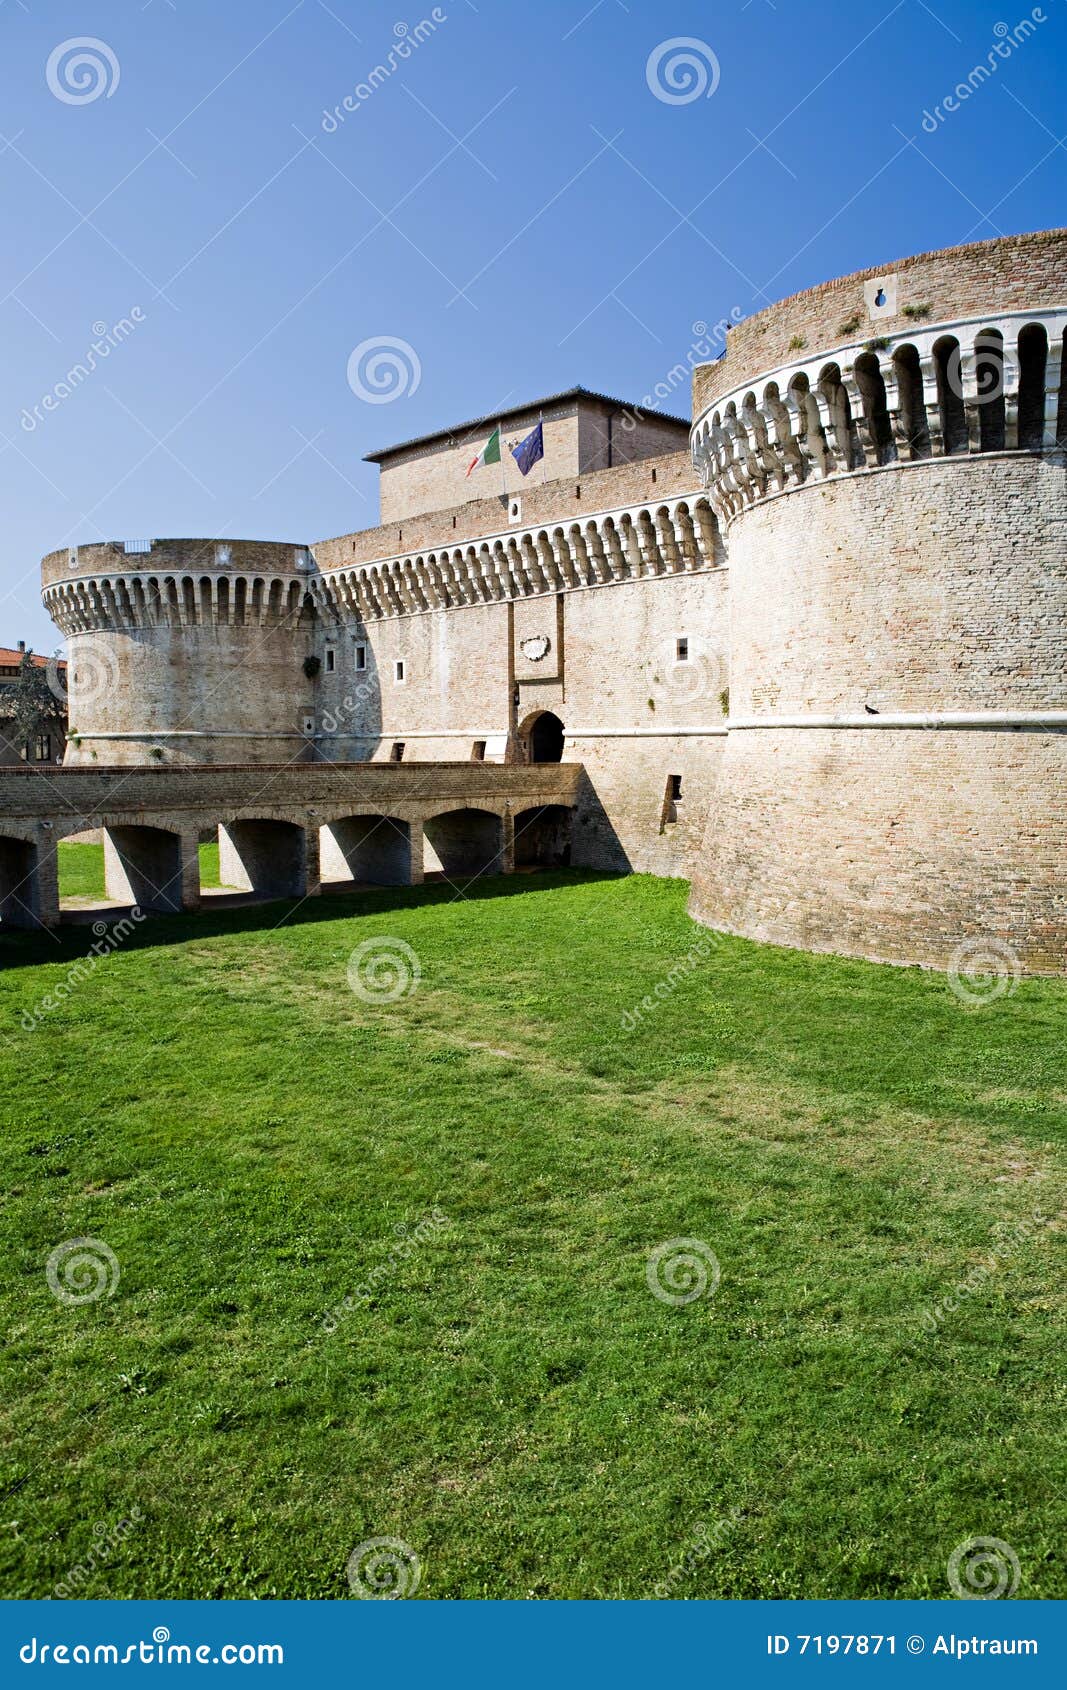 castle in italy - rocca roveresca